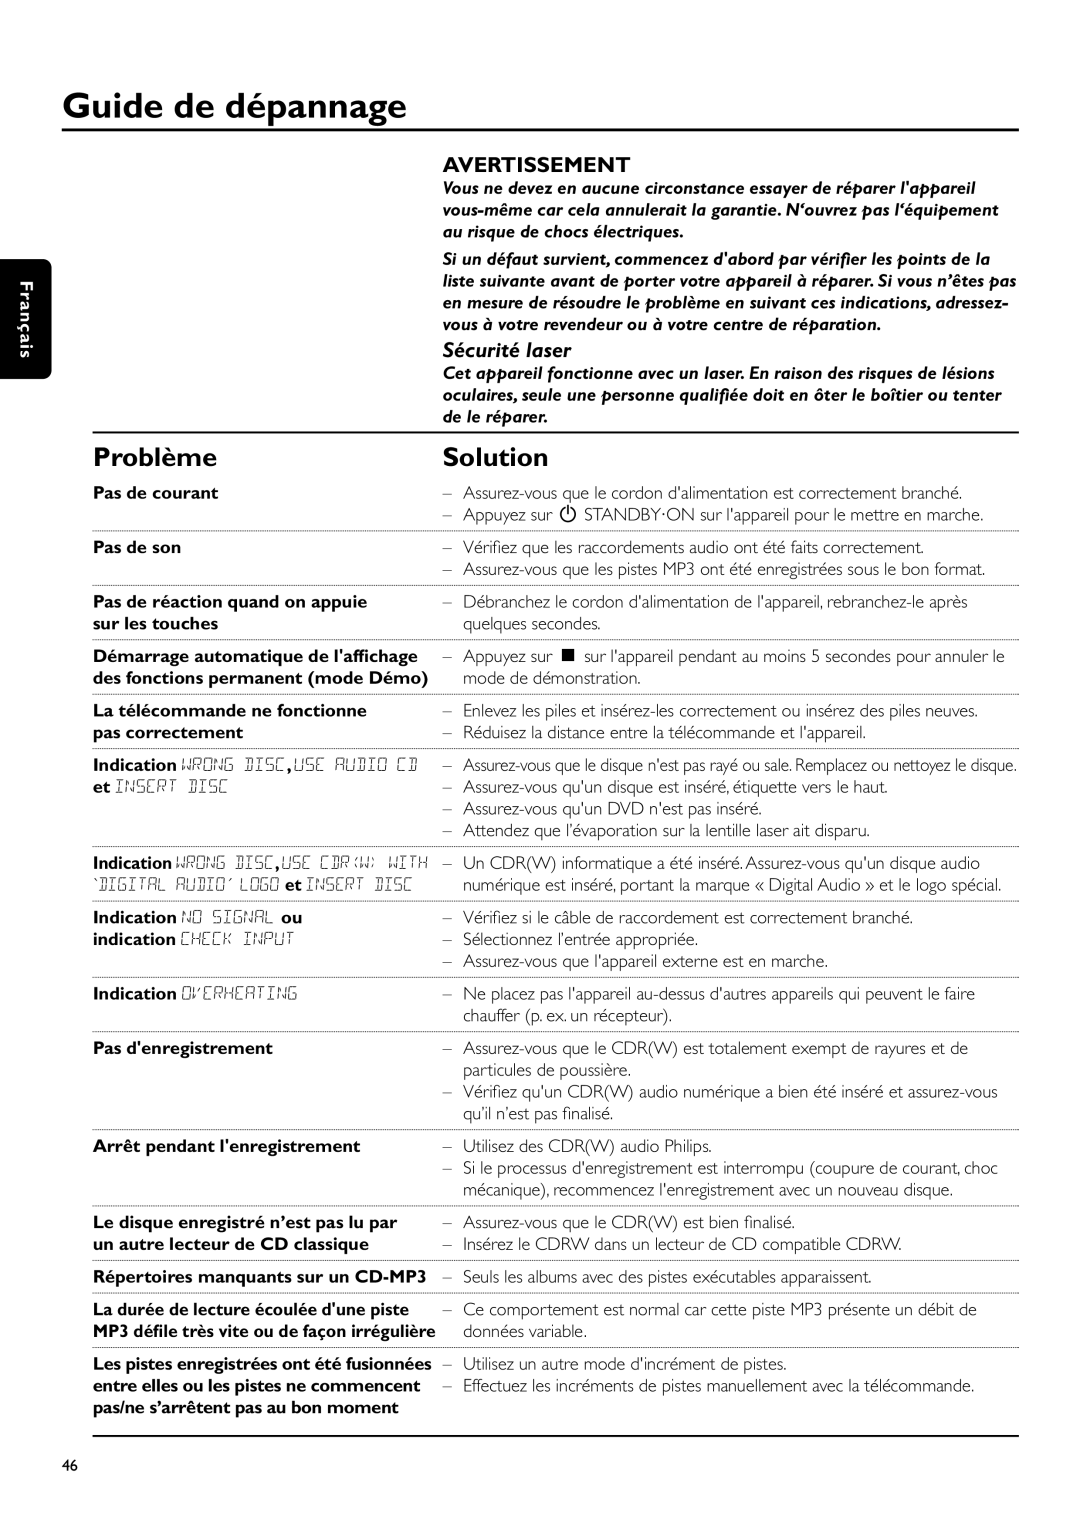 Philips CDR-795 manual Guide de dépannage, Problème, Avertissement, Sécurité laser, Solution, Français, Pas de courant 